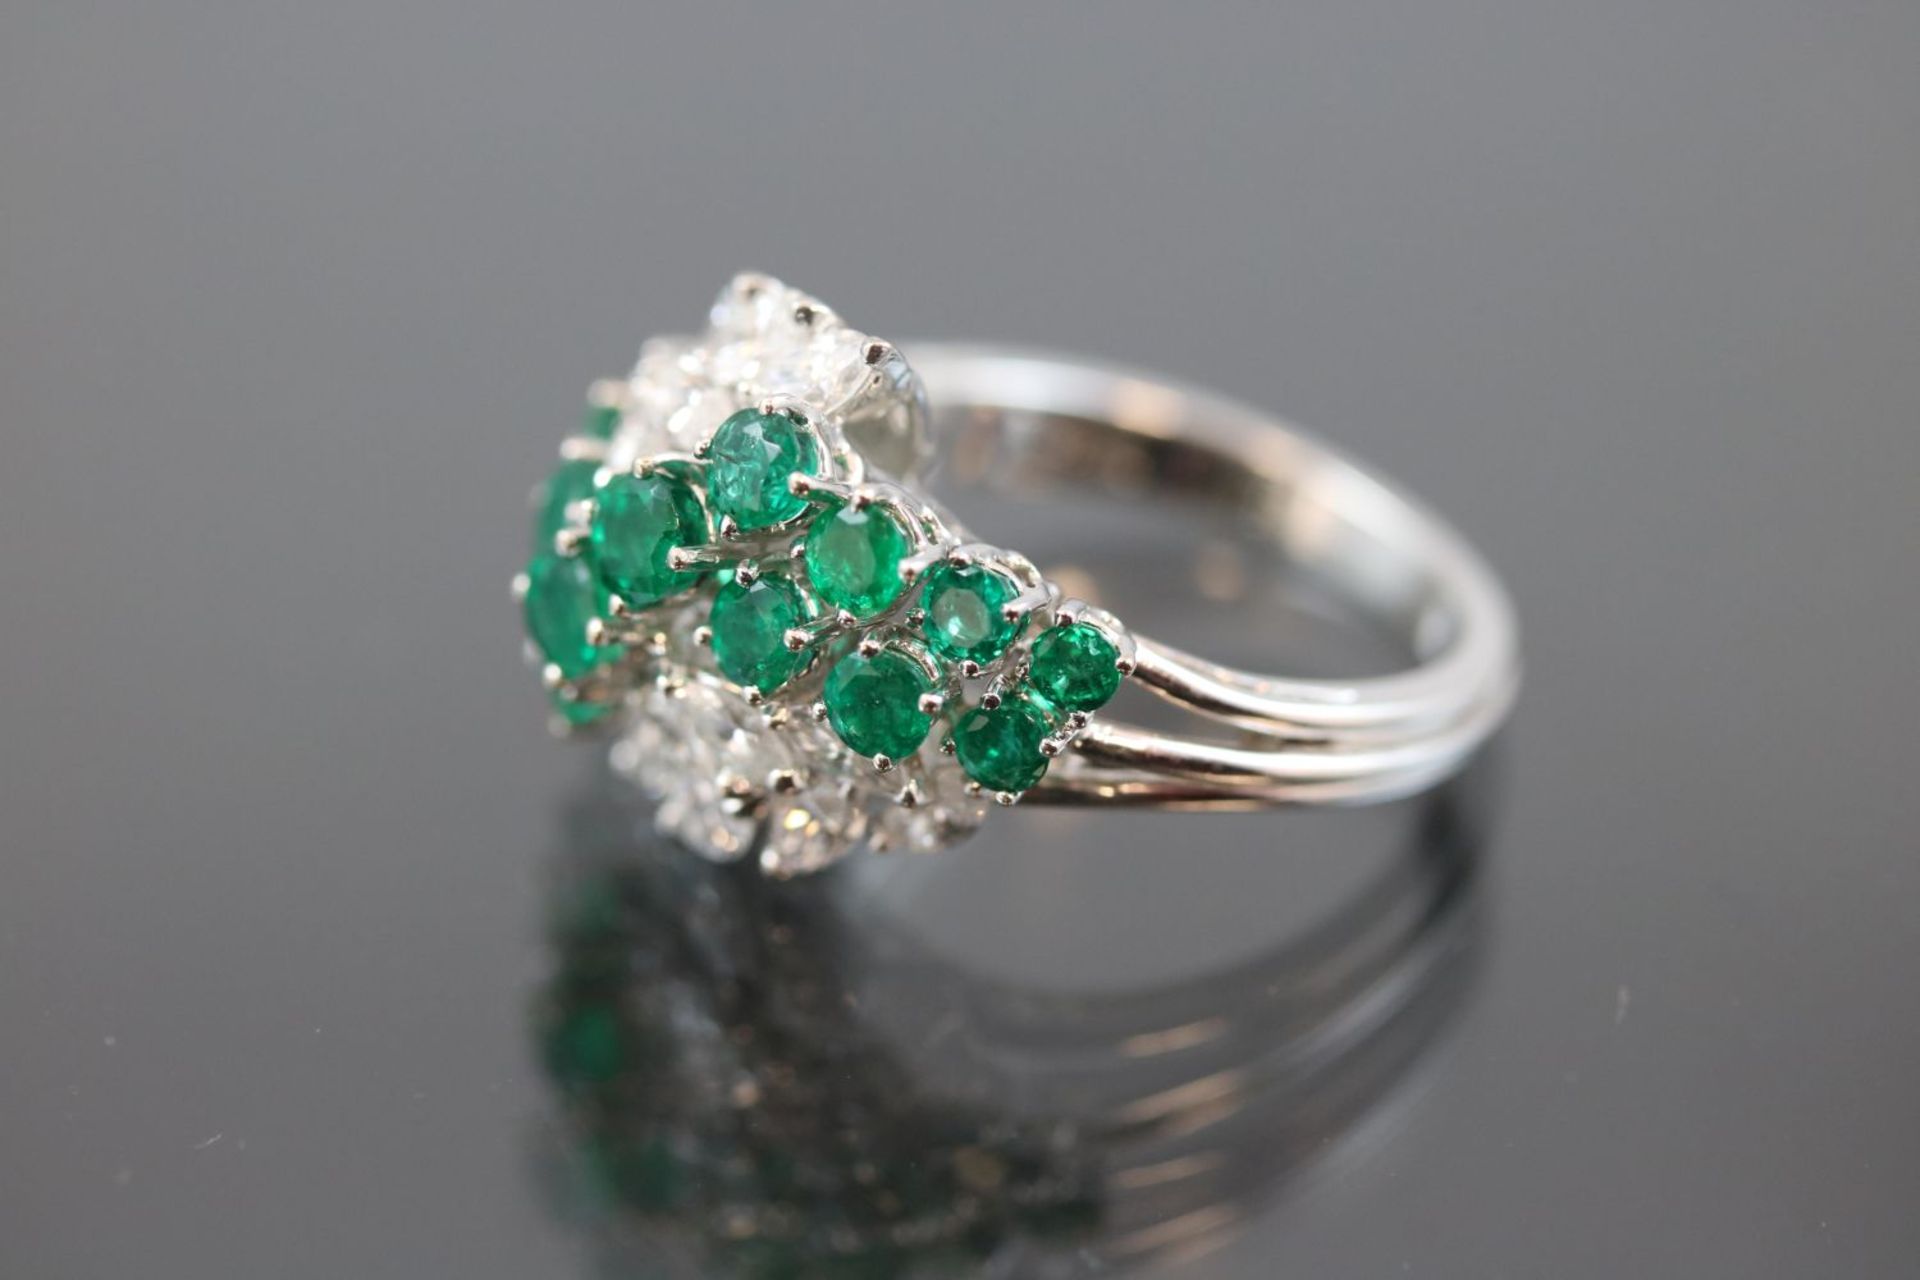 Smaragd-Diamant-Ring, 750 Weißgold7,1 Gramm 14 Diamantnavetten, 1,25 ct., tw/if. Ringgröße: 5416 - Bild 3 aus 3